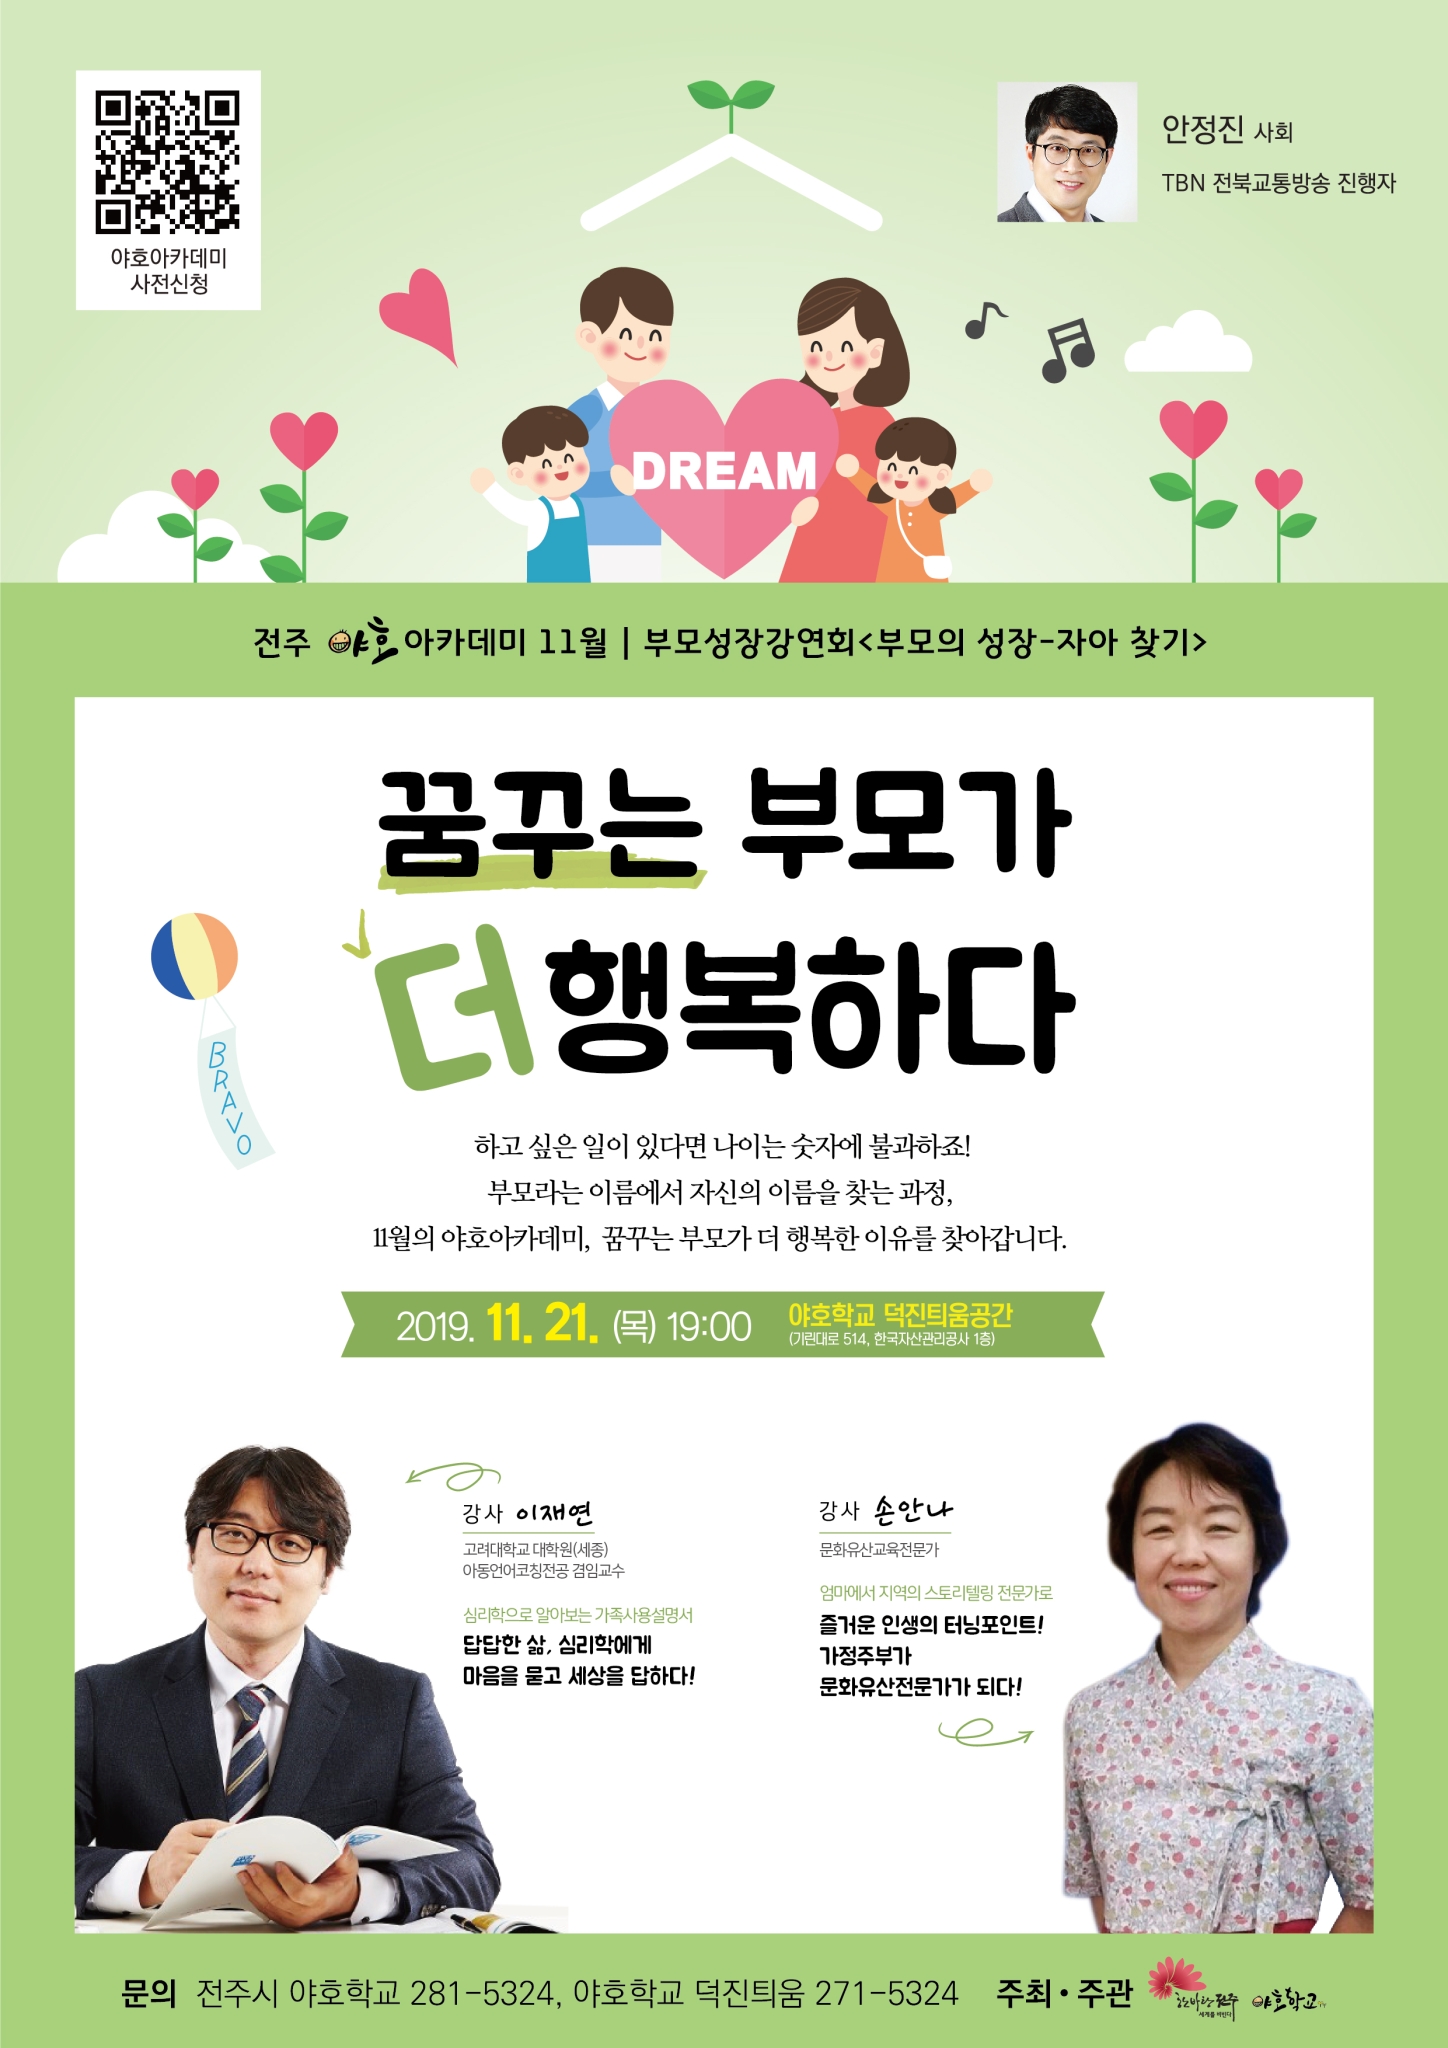 전라북도전주교육지원청 초등교육과_야호아카데미 홍보 웹자보(11월)